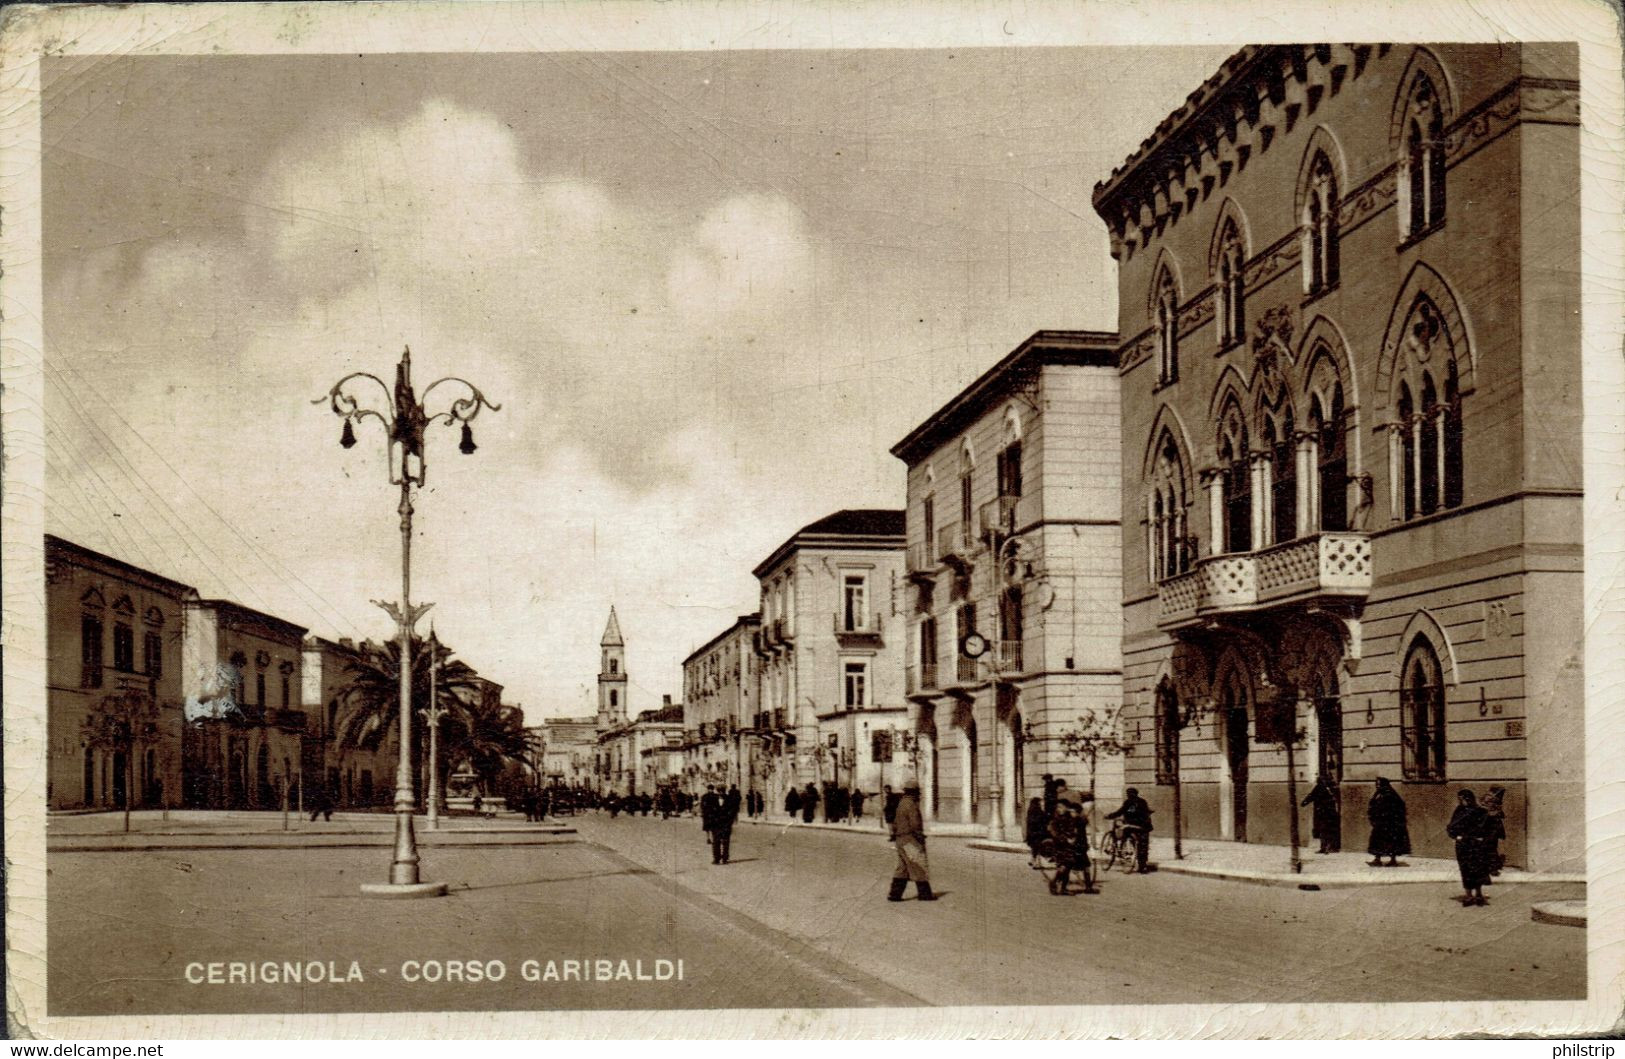 CERIGNOLA (FOGGIA) - Corso Garibaldi - Anni '20/'30 - ANIMATA - Rif. 521 PI - Cerignola